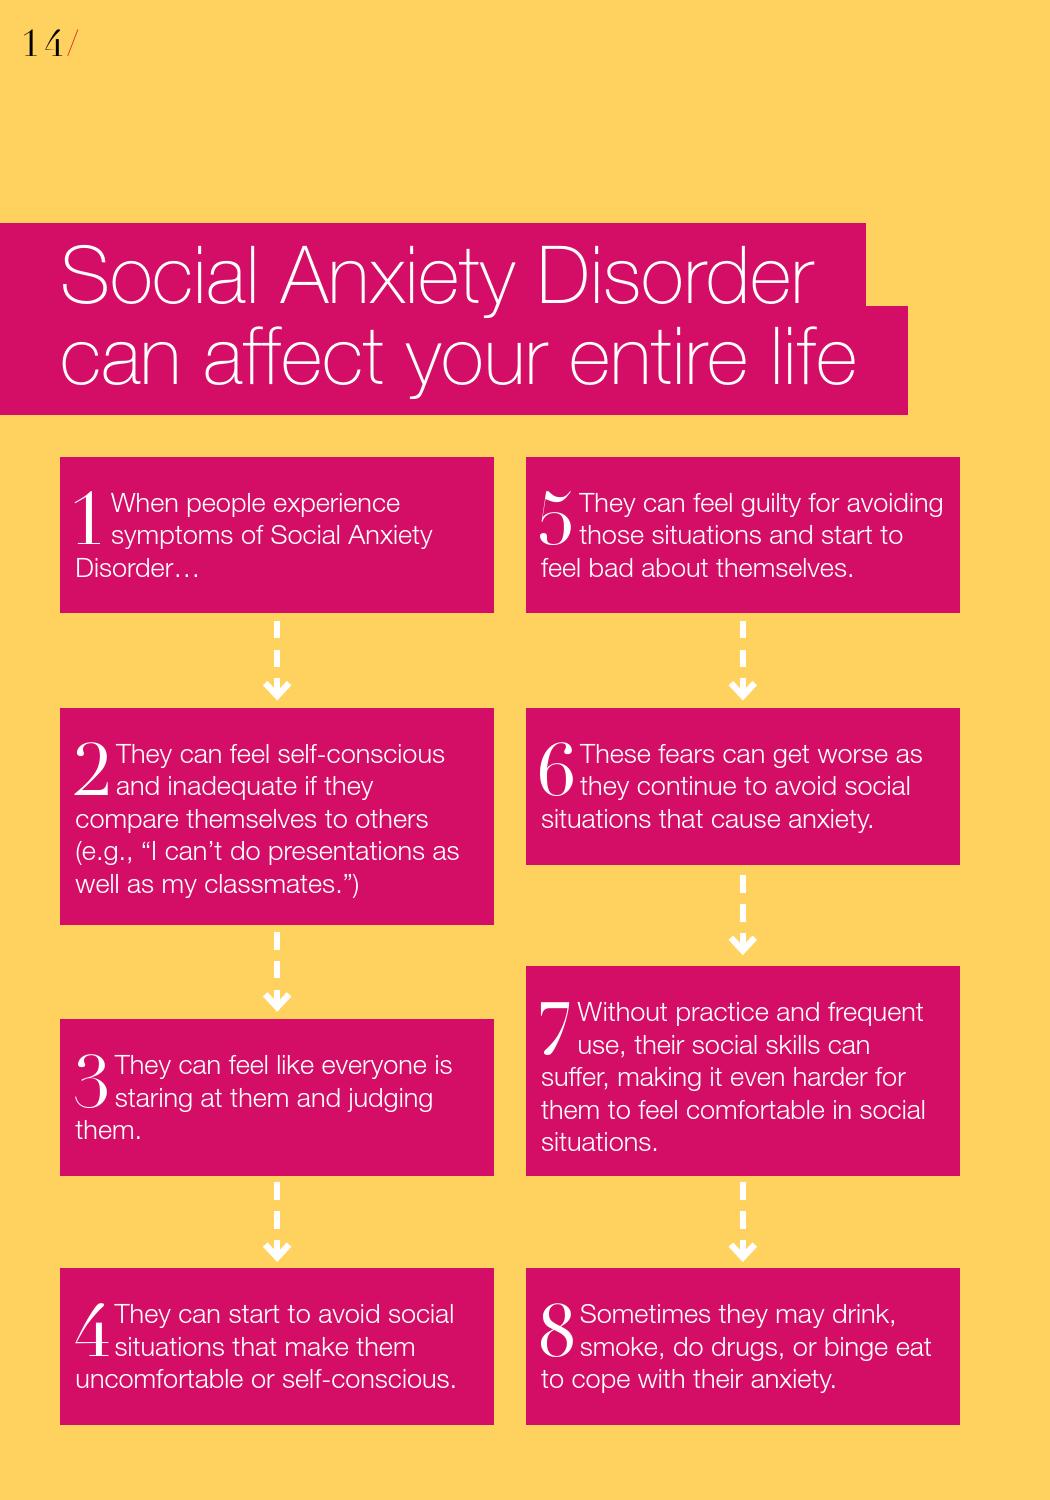 اگر اضطراب اجتماعی شما بدتر می شود چه باید کرد؟